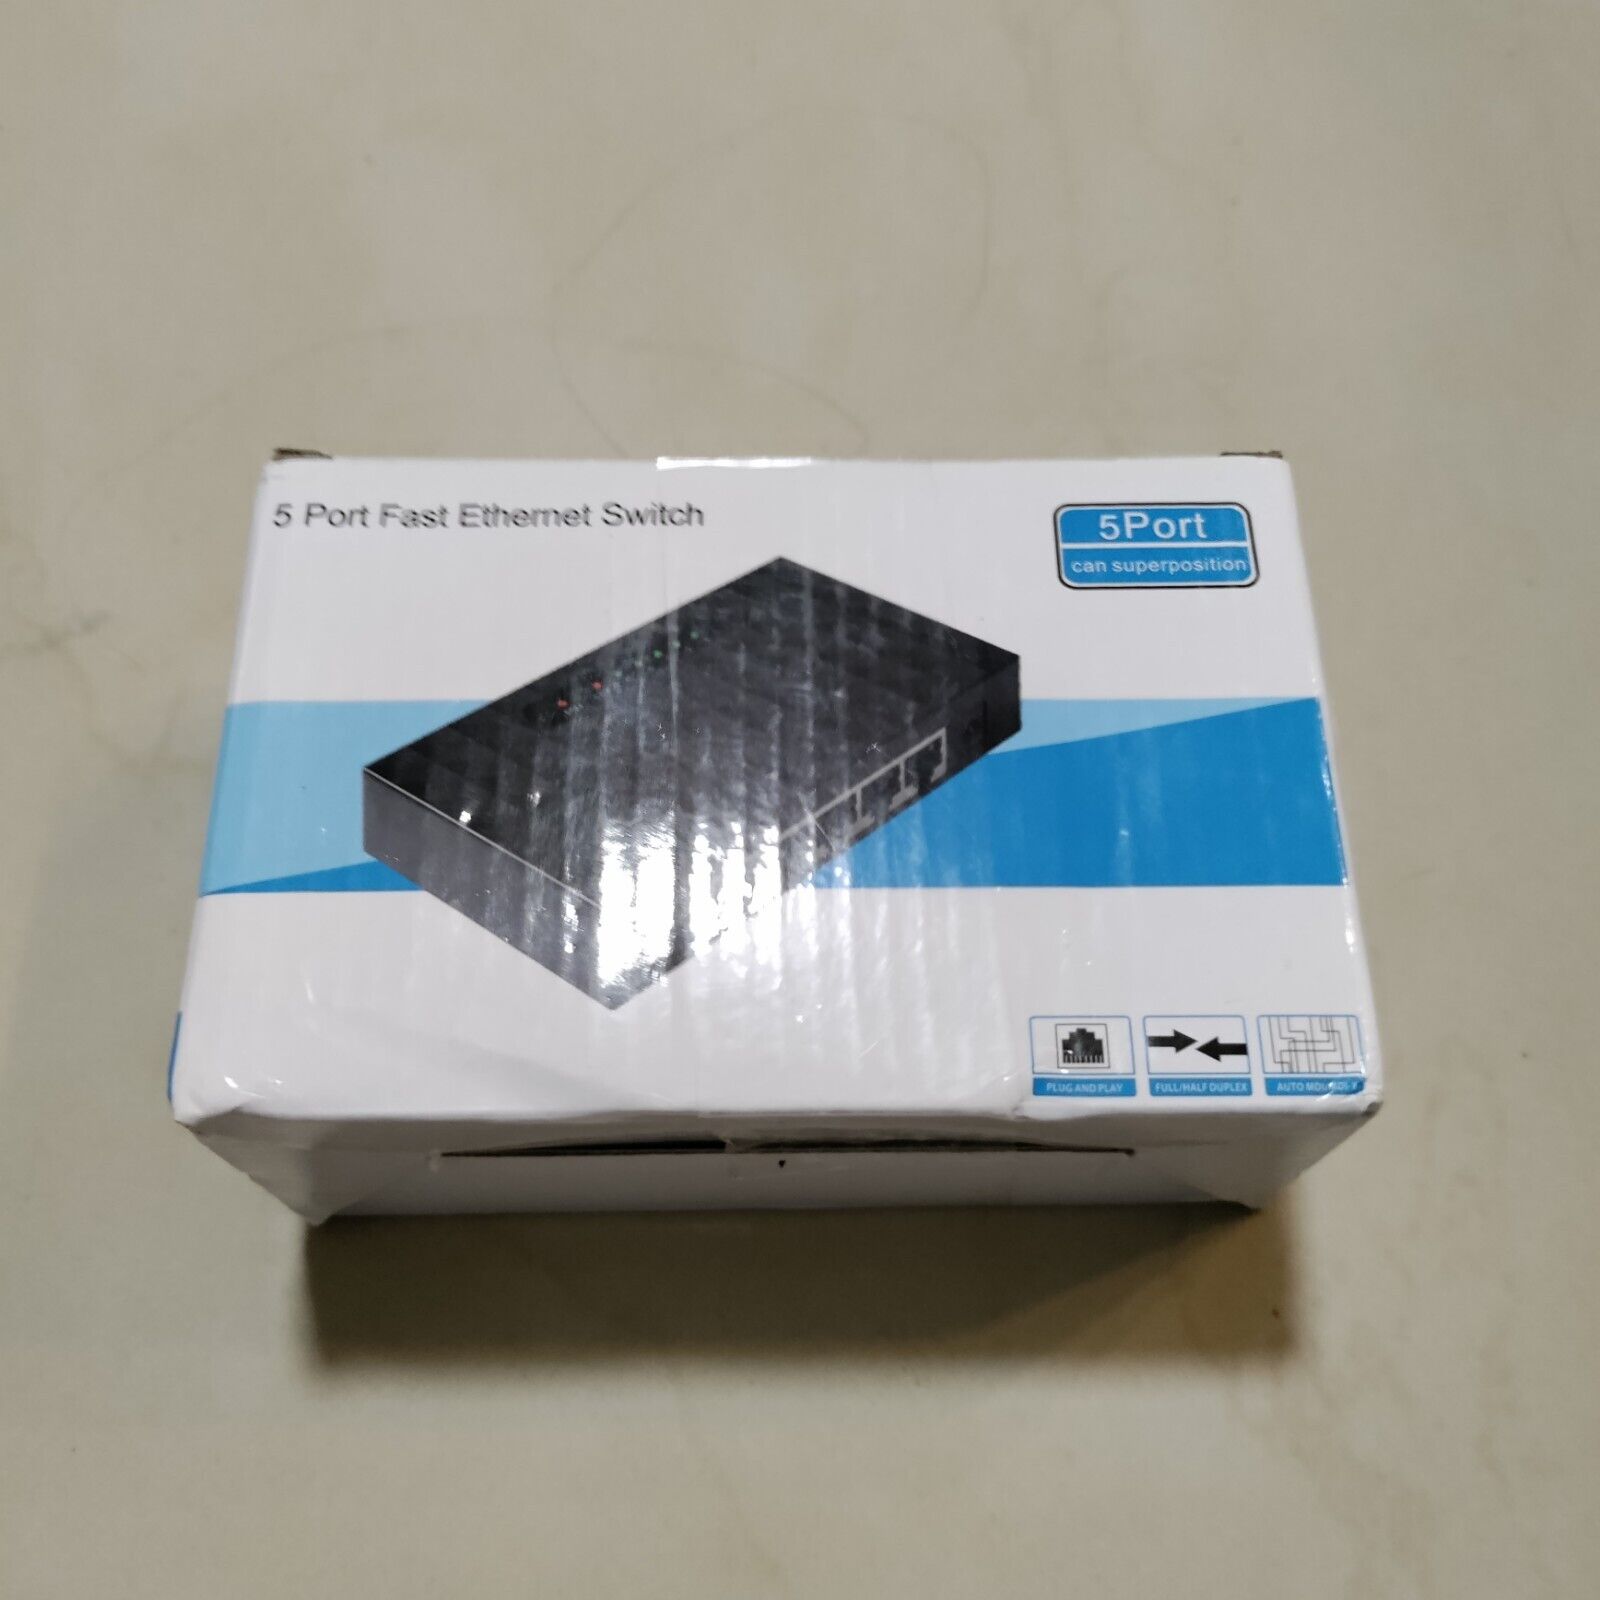 Black Box  (LBS005A) 5-Ports External Switch